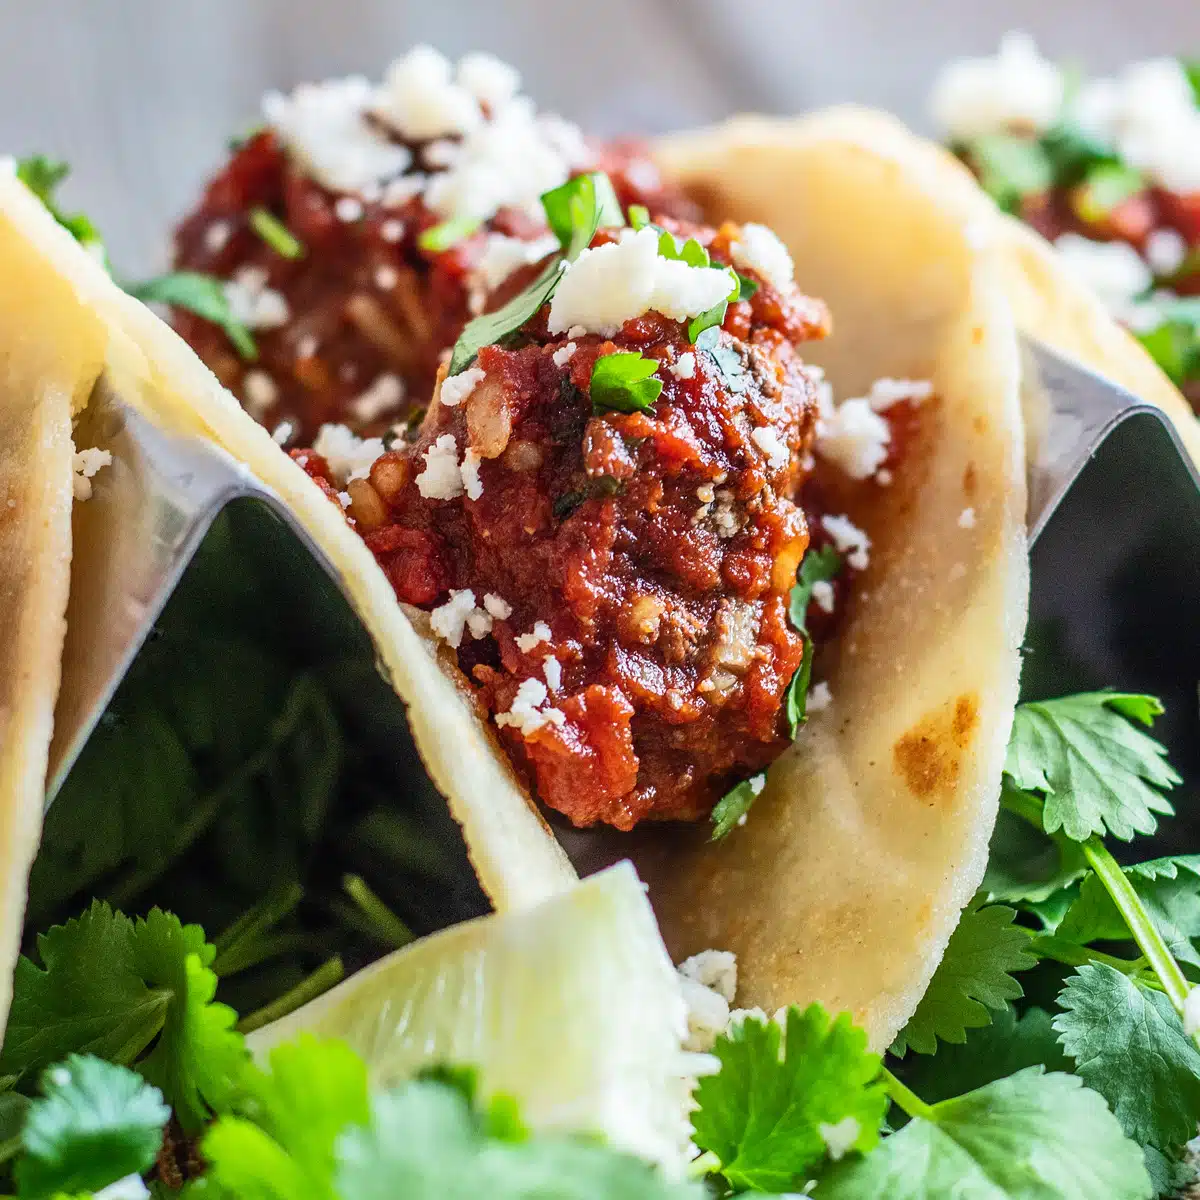 Resipi taco albondigas terbaik menggunakan bebola daging Mexico yang enak dalam sos tomato dan cili chipotle yang enak.